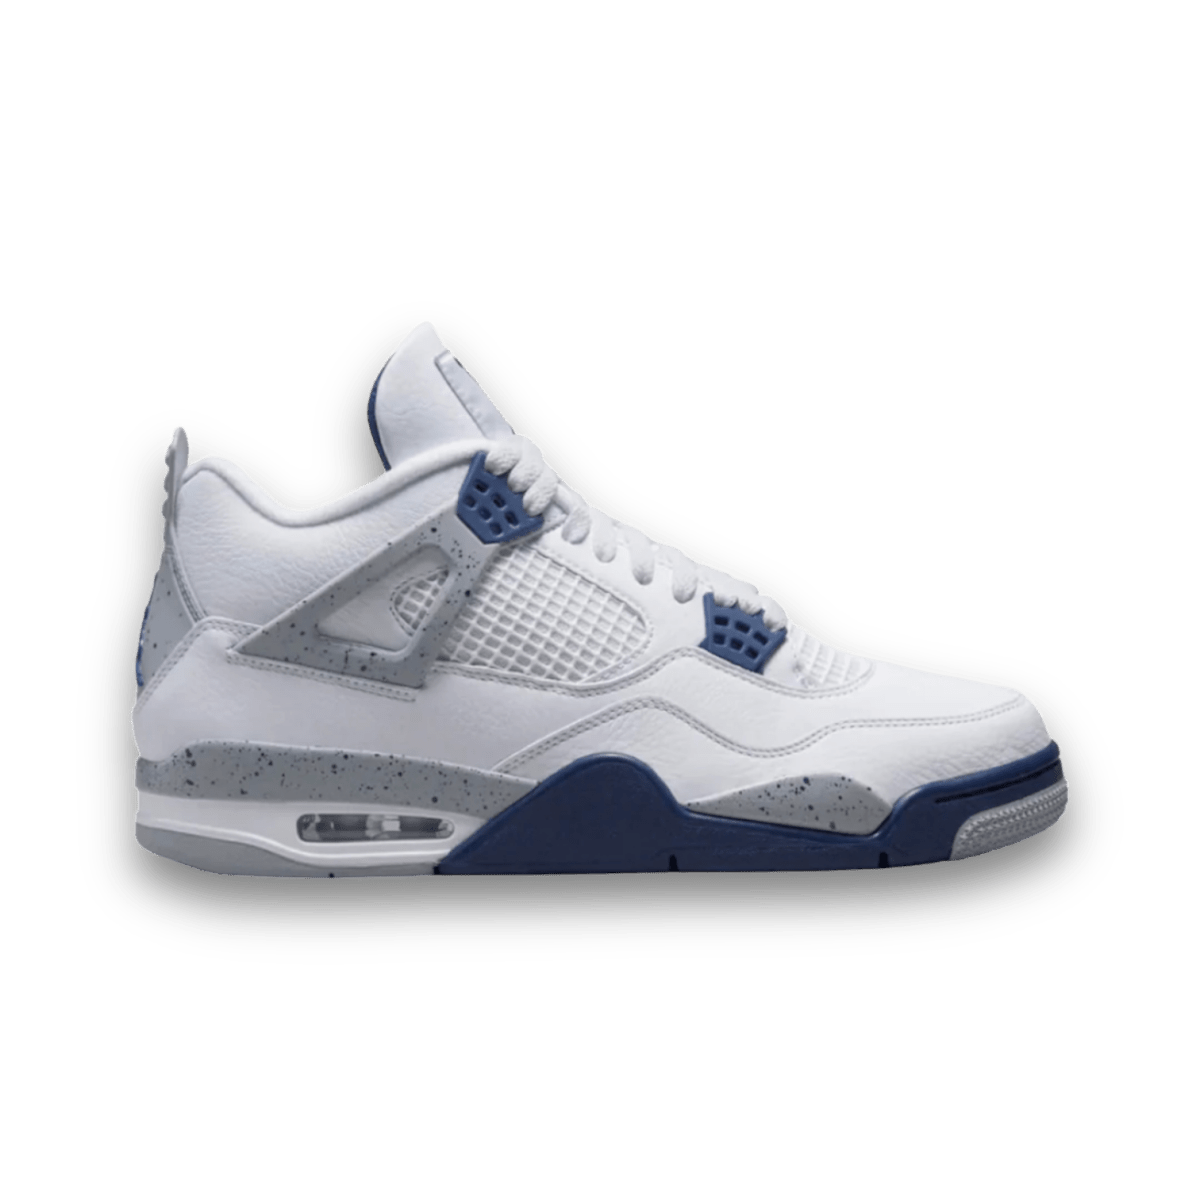 Air Jordan 4 Midnight Navy - Gently Enjoyed (Used) Men 10 - Mid Sneaker - Jawns on Fire Sneakers & Streetwear